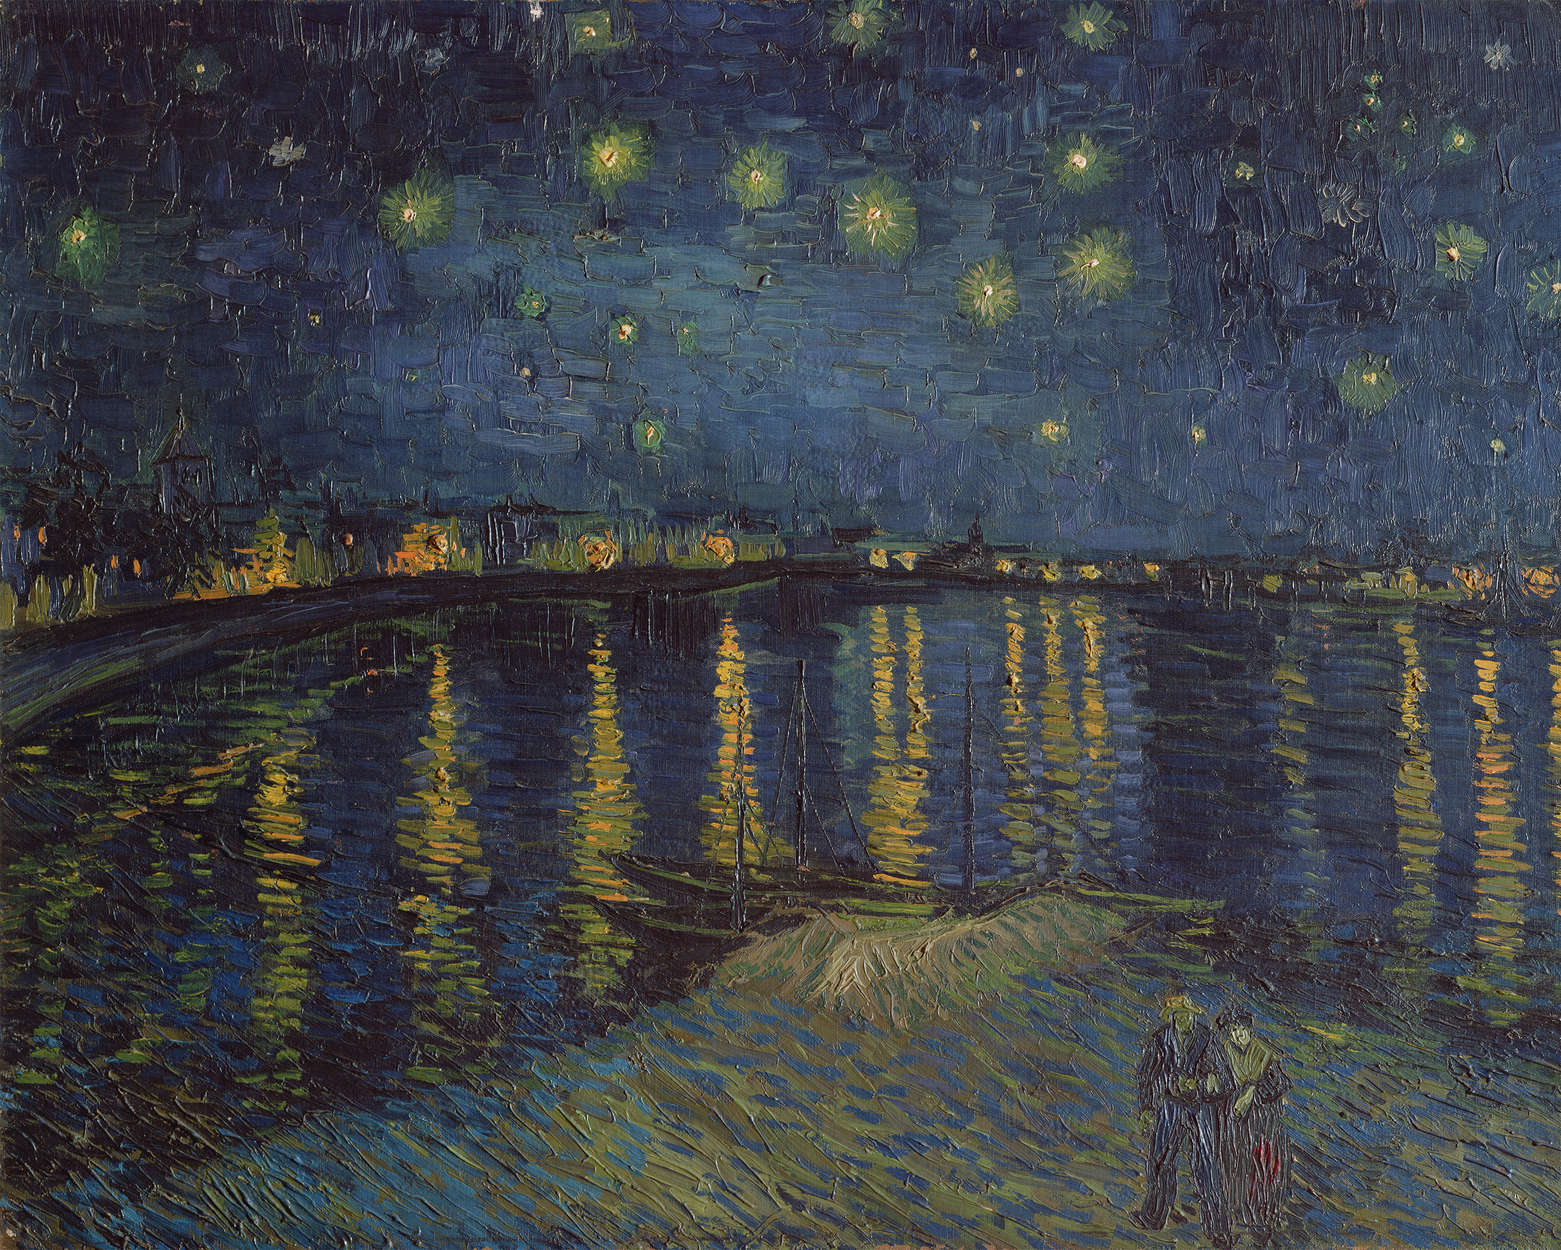             Fototapete "Sternennacht über der Rhone" von Vincent van Gogh
        